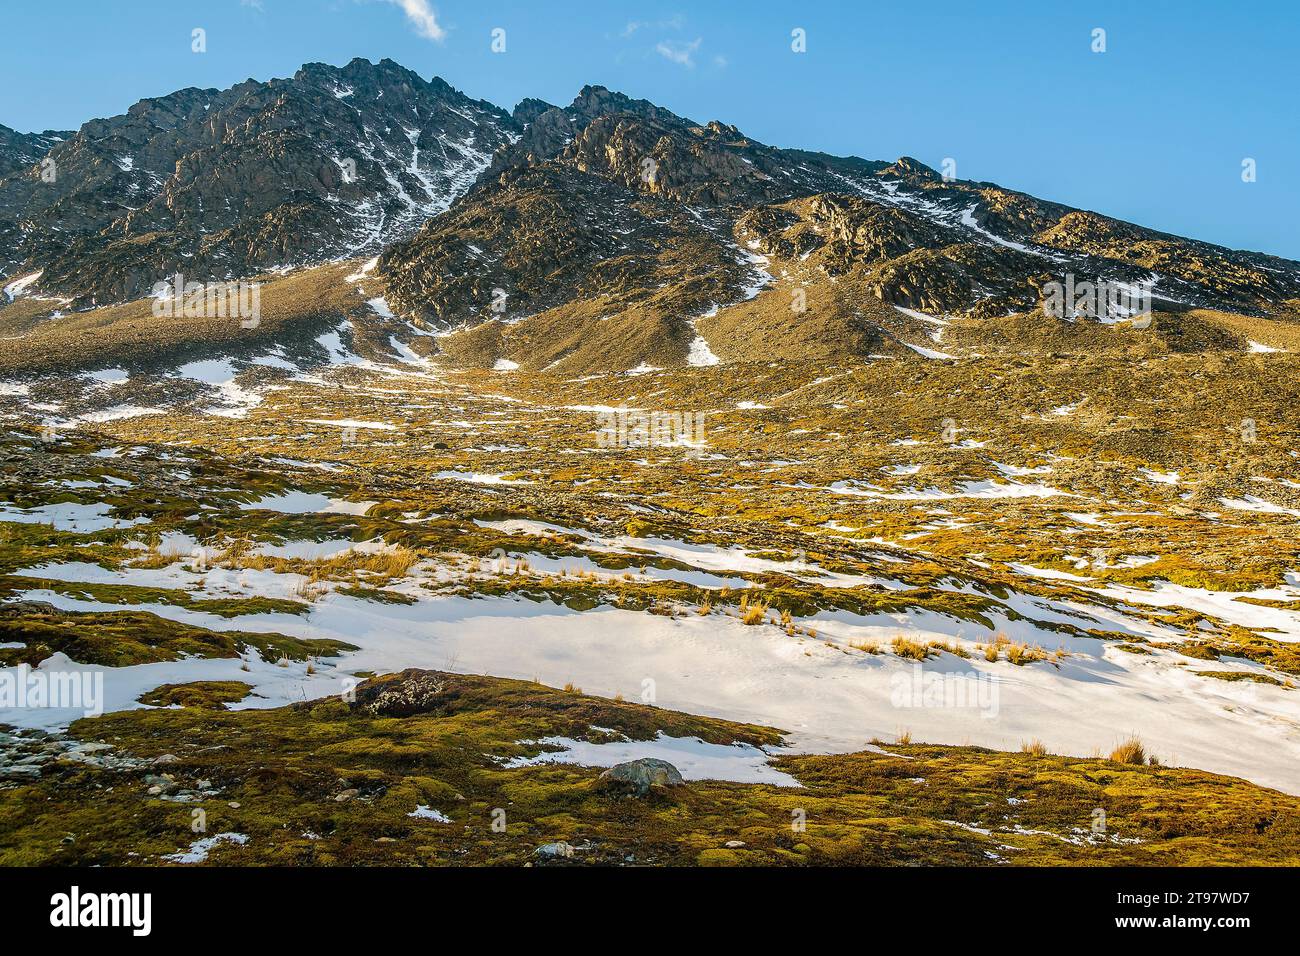 Martial glacier landscape, ushuaia, tierra del fuego, argentina Stock Photo